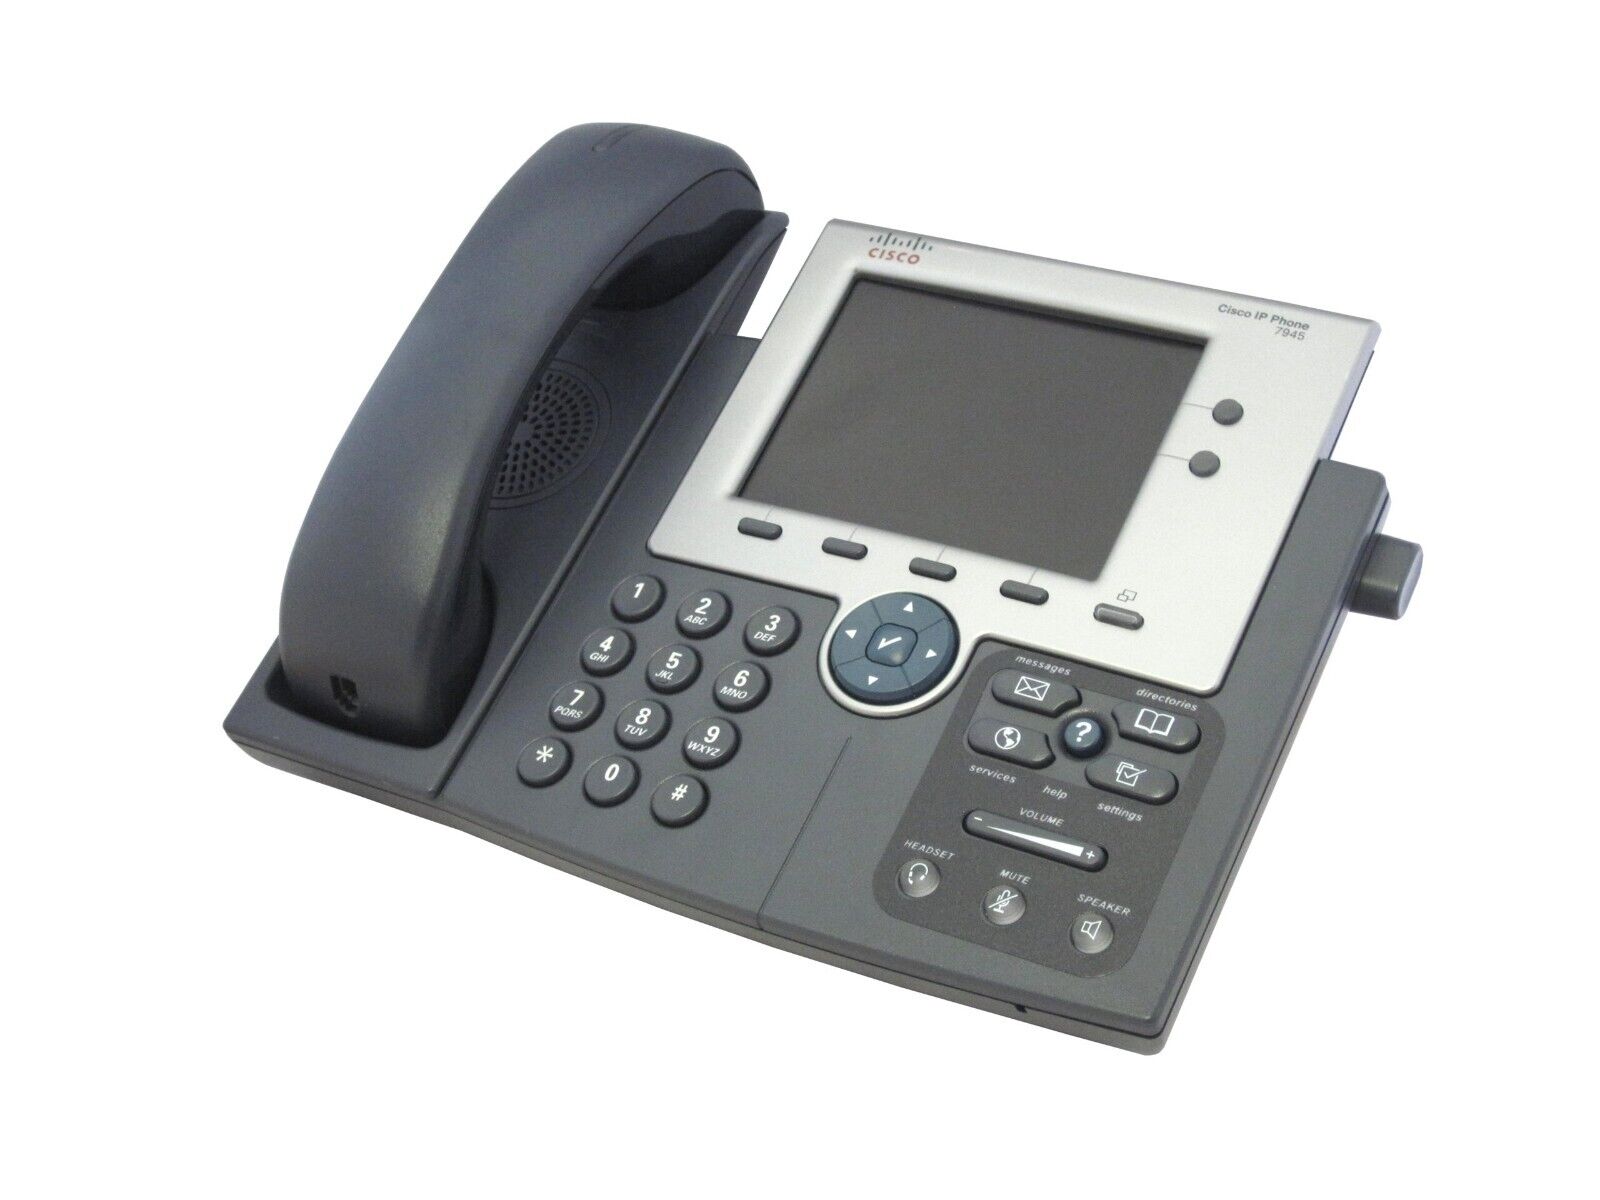 Cisco CP-7945G, Cisco IP Phone 7945. Gig ethernet Brand New.